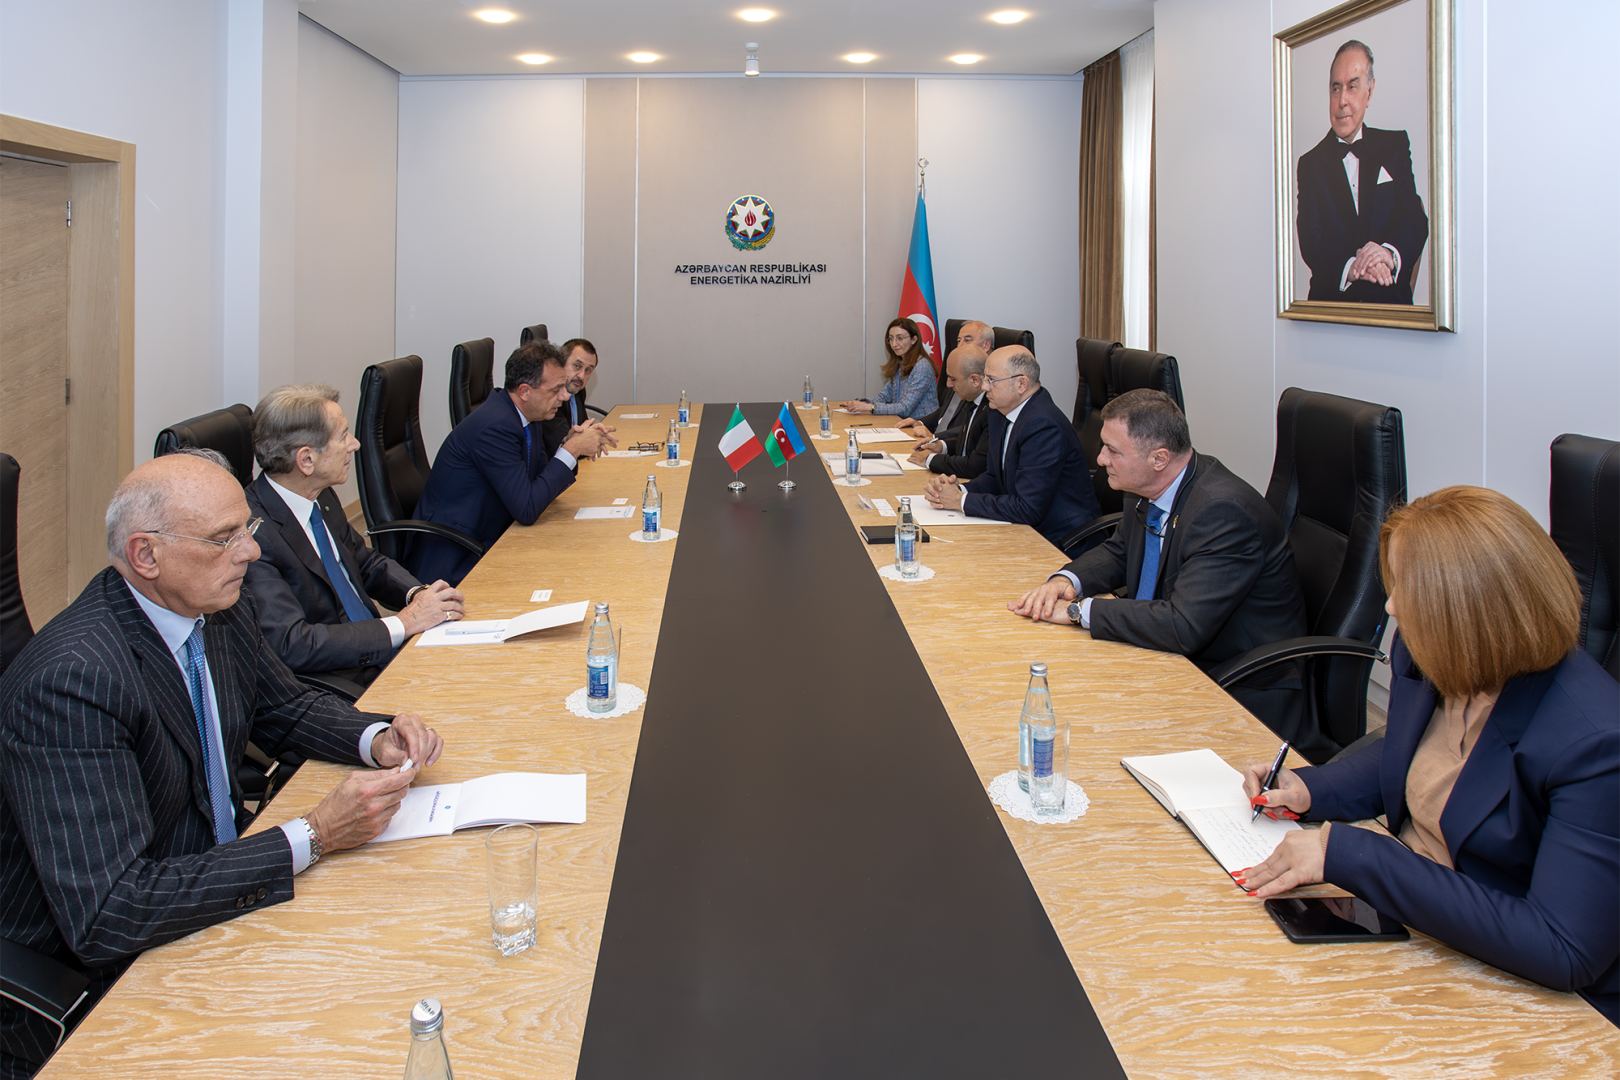 Италия играет важную роль в развитии отношений между Азербайджаном и ЕС - министр